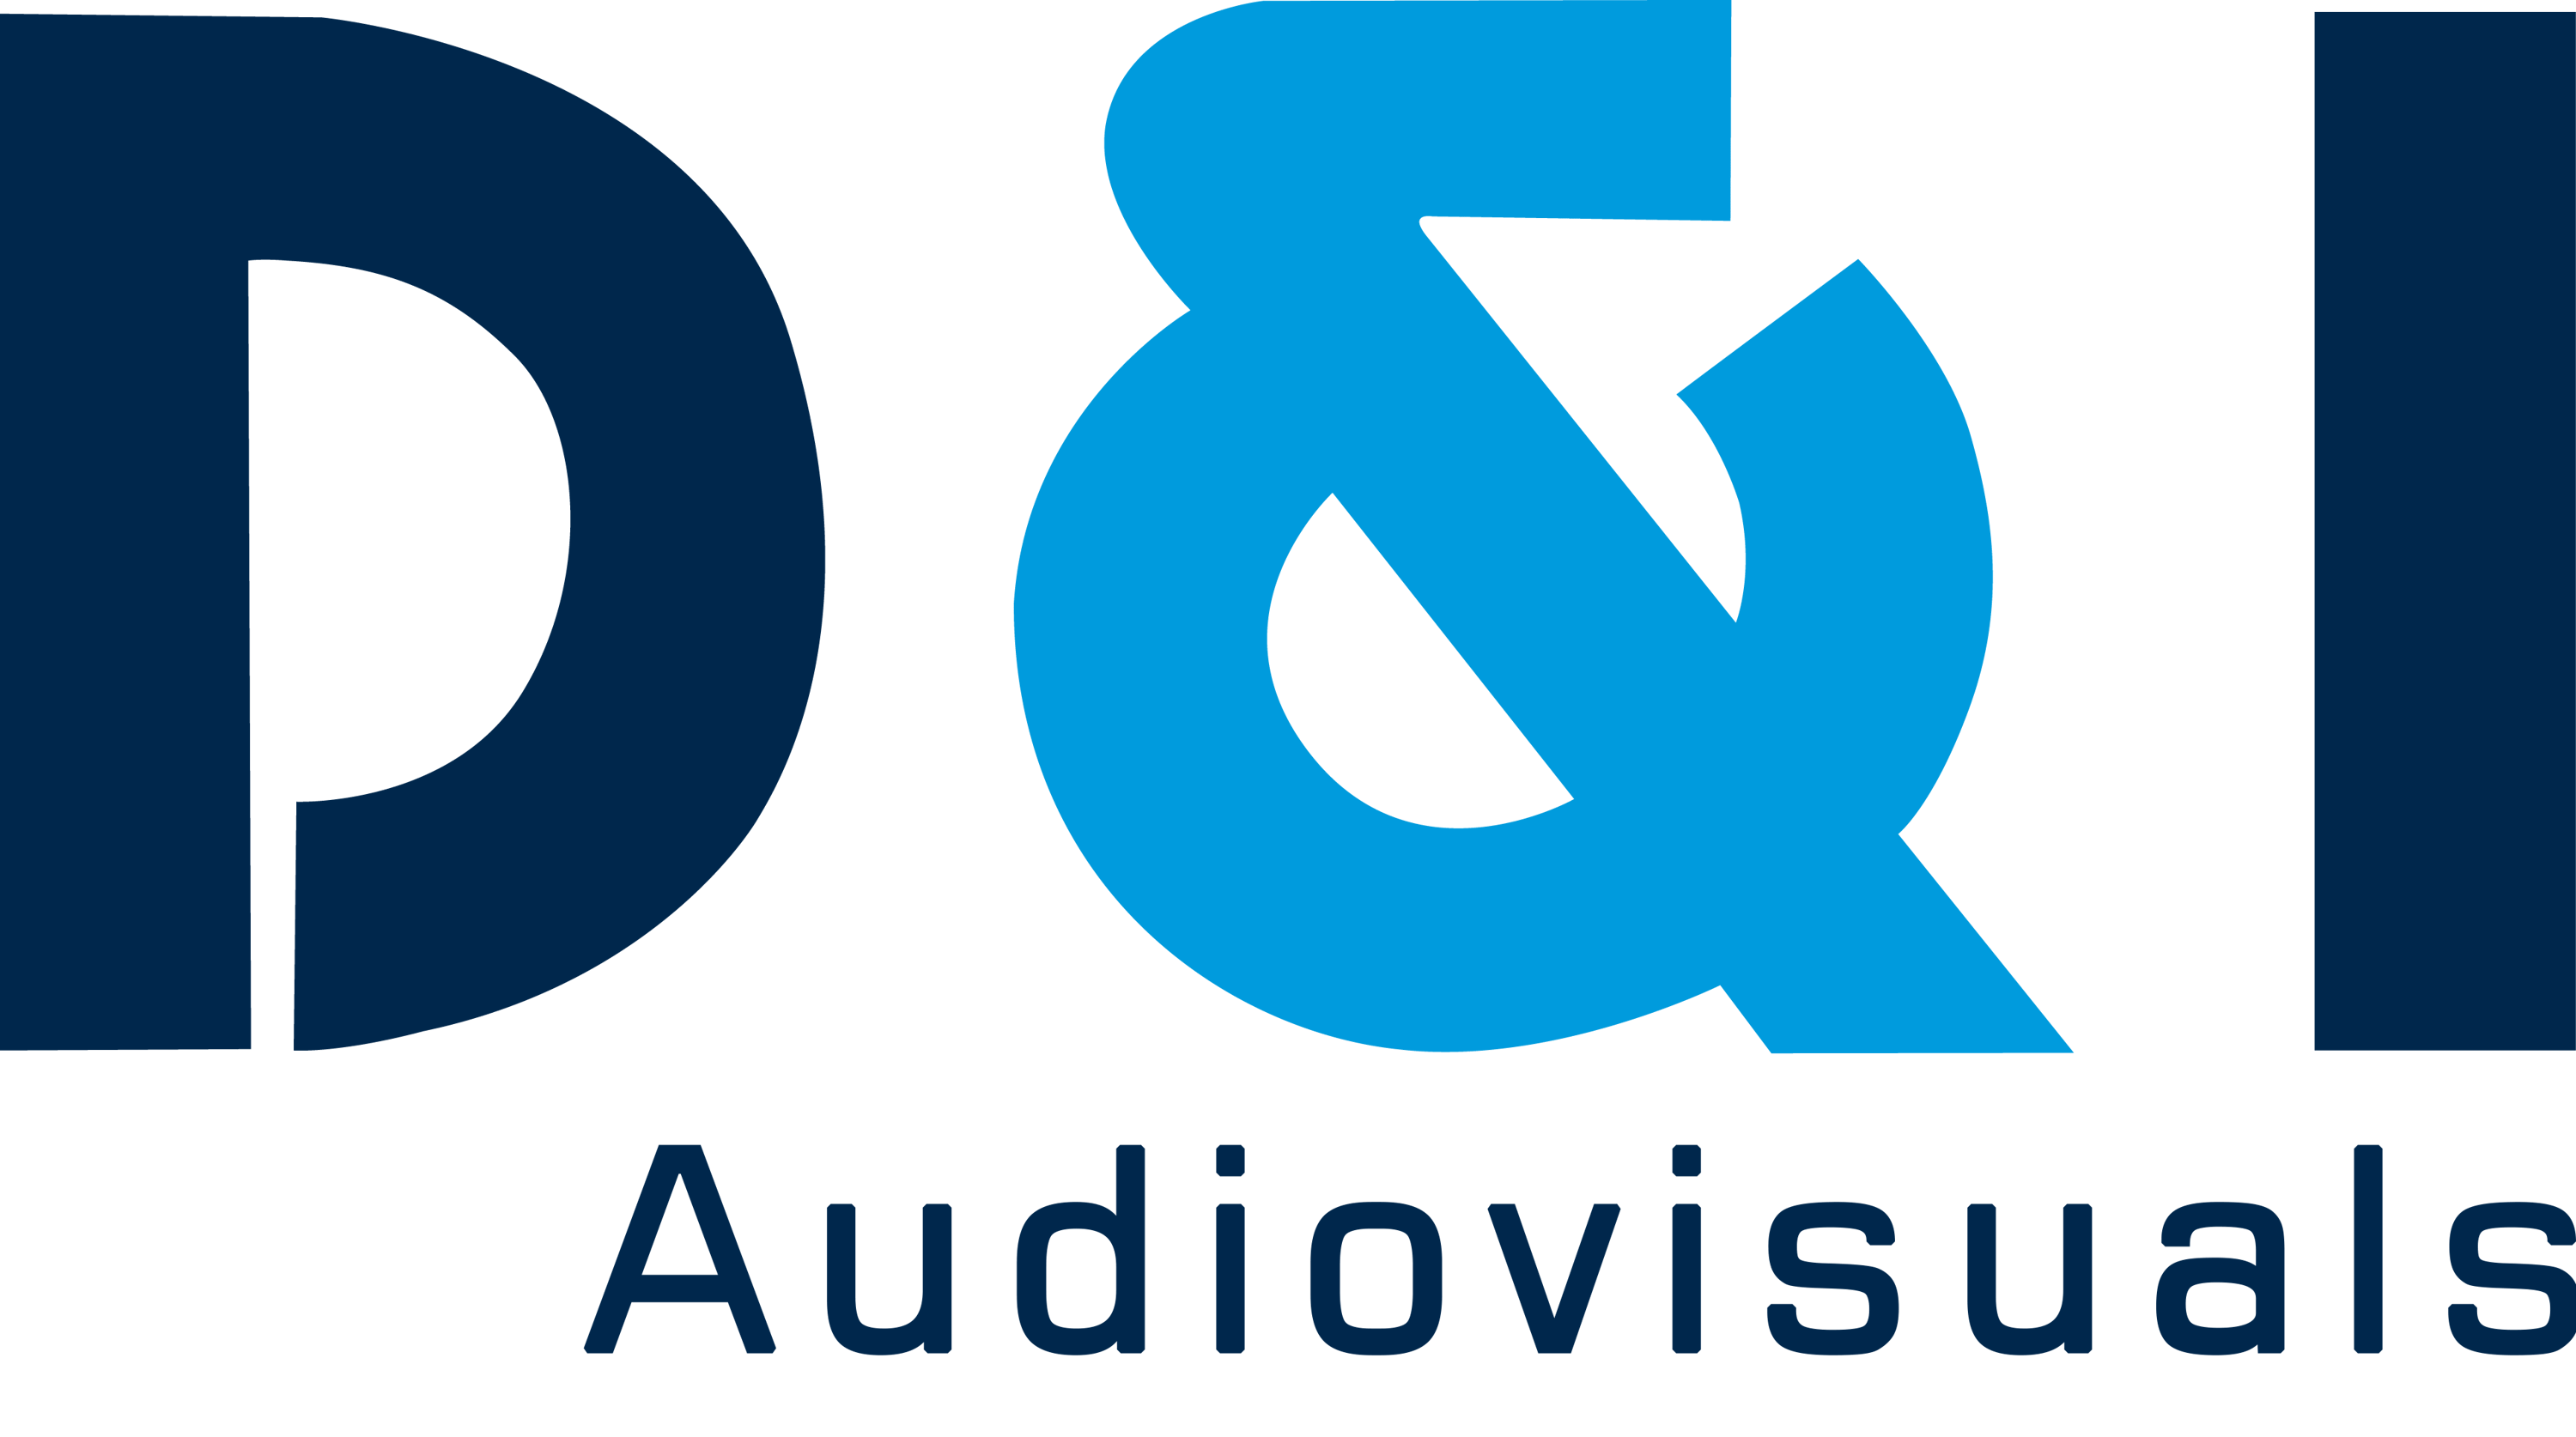 D&I Audiovisuals